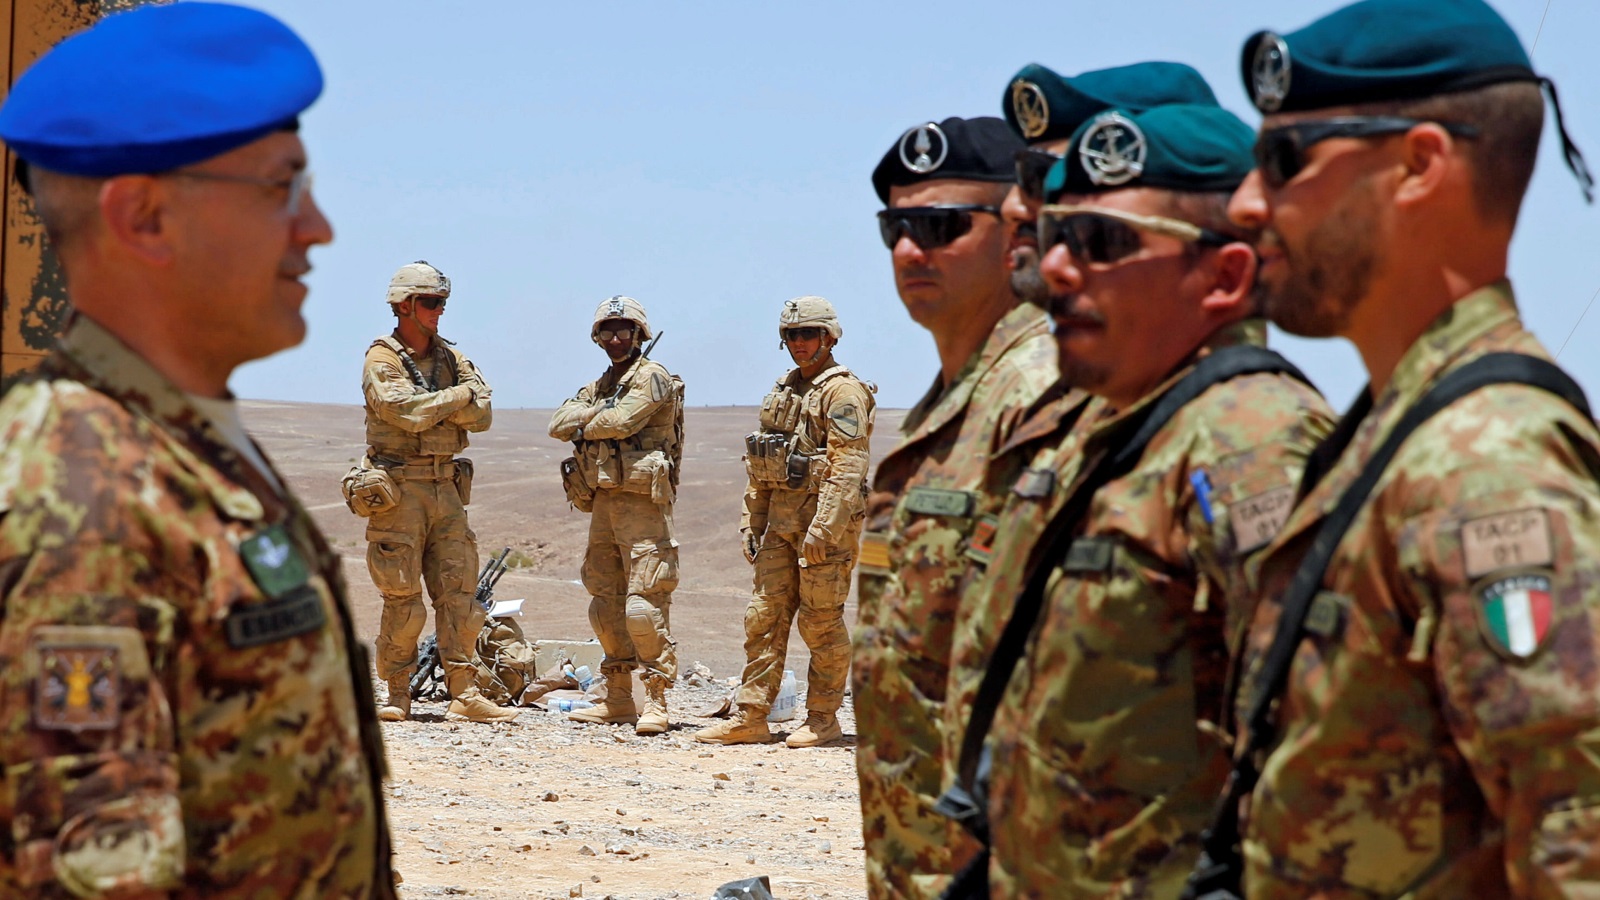  قوات أميركية وإيطالية ضمن التدريبات المشتركة على الحدود الأردنية السعودية مايو 2017 (رويترز)